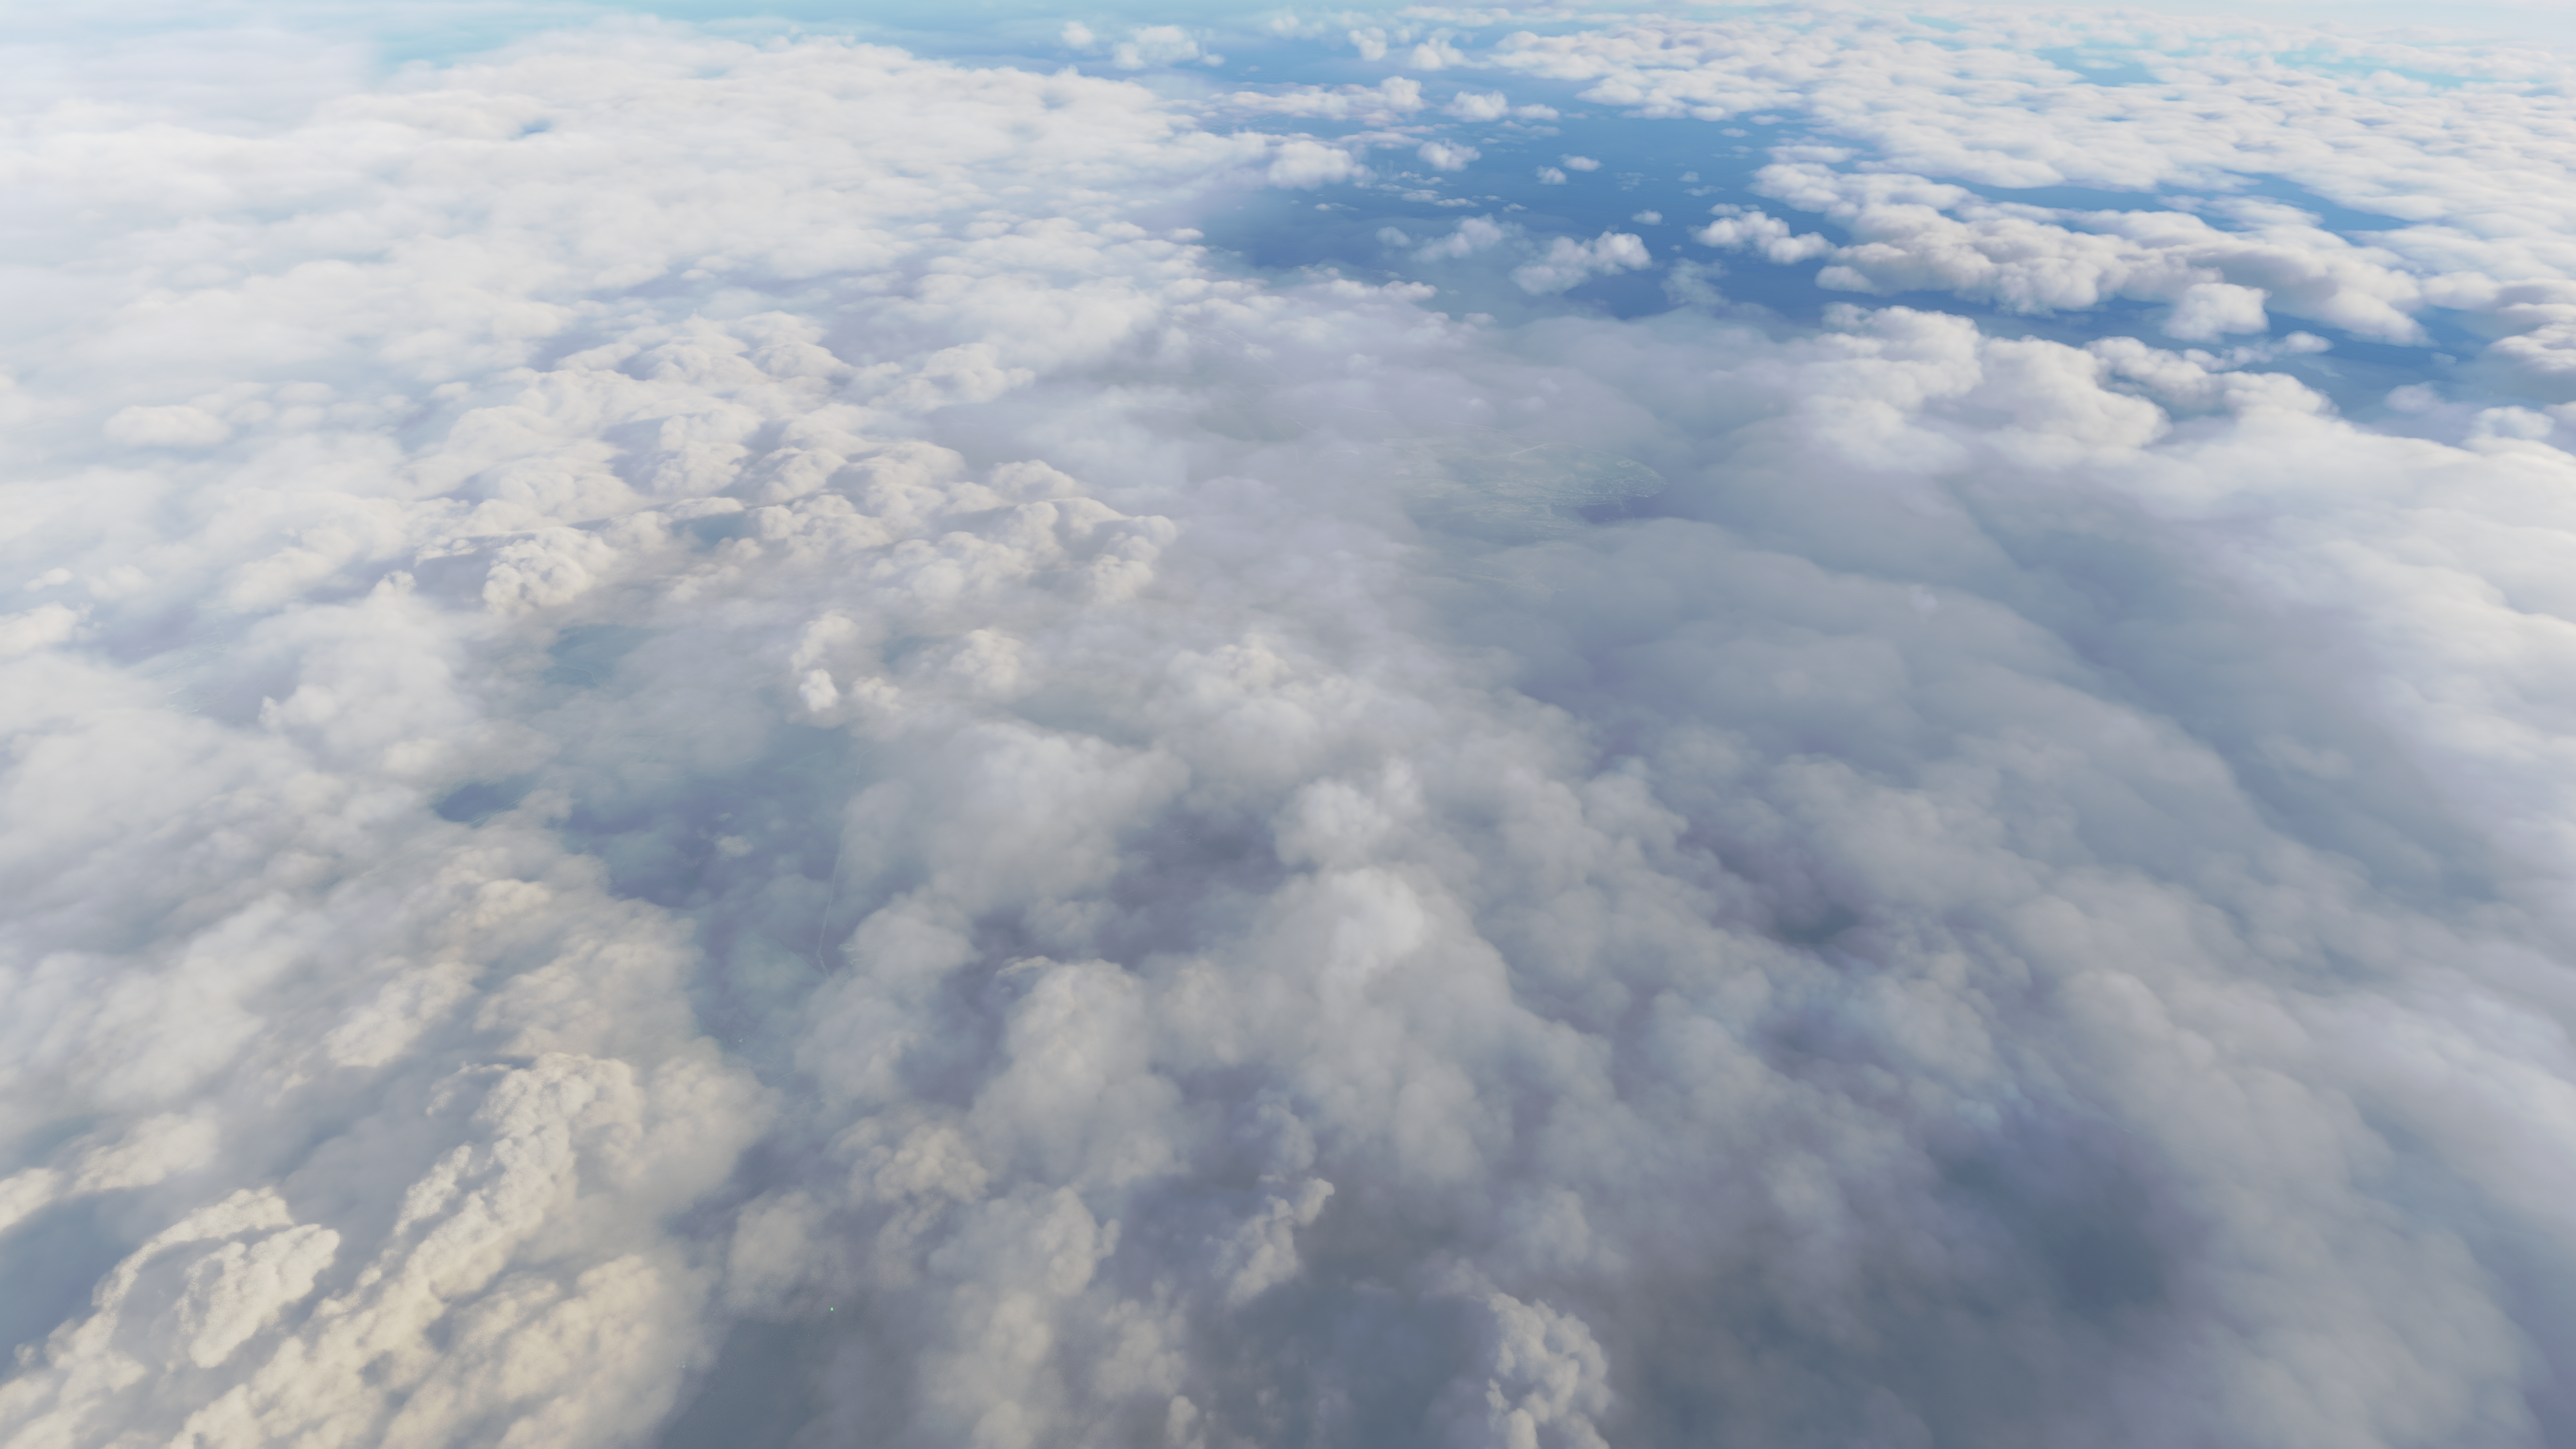 Microsoft Flight Simulator 2020 Clouds 3840x2160